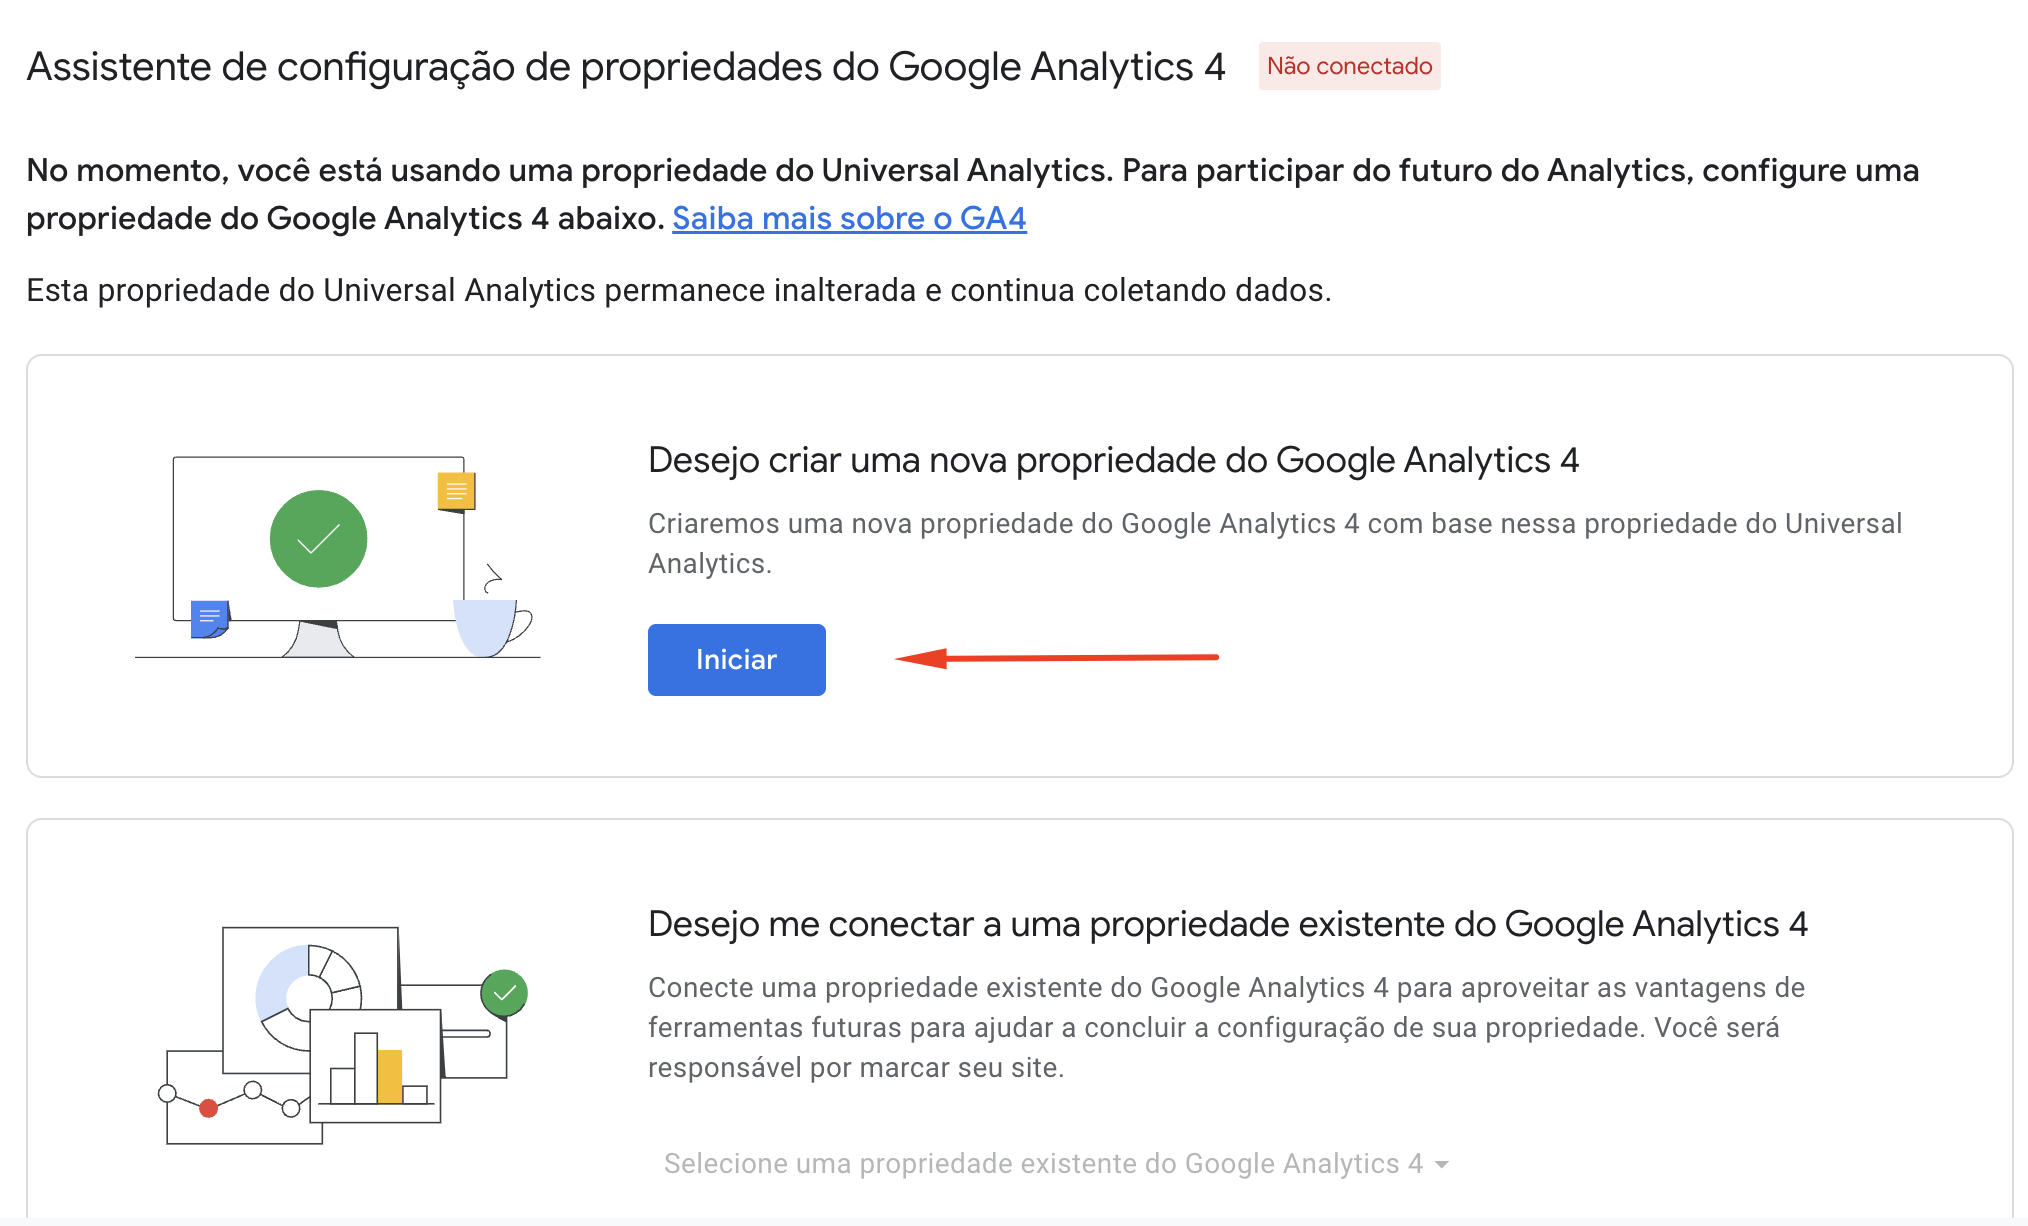 Google Analytics 4 - inicie o processo de criar uma nova propriedade no GA4